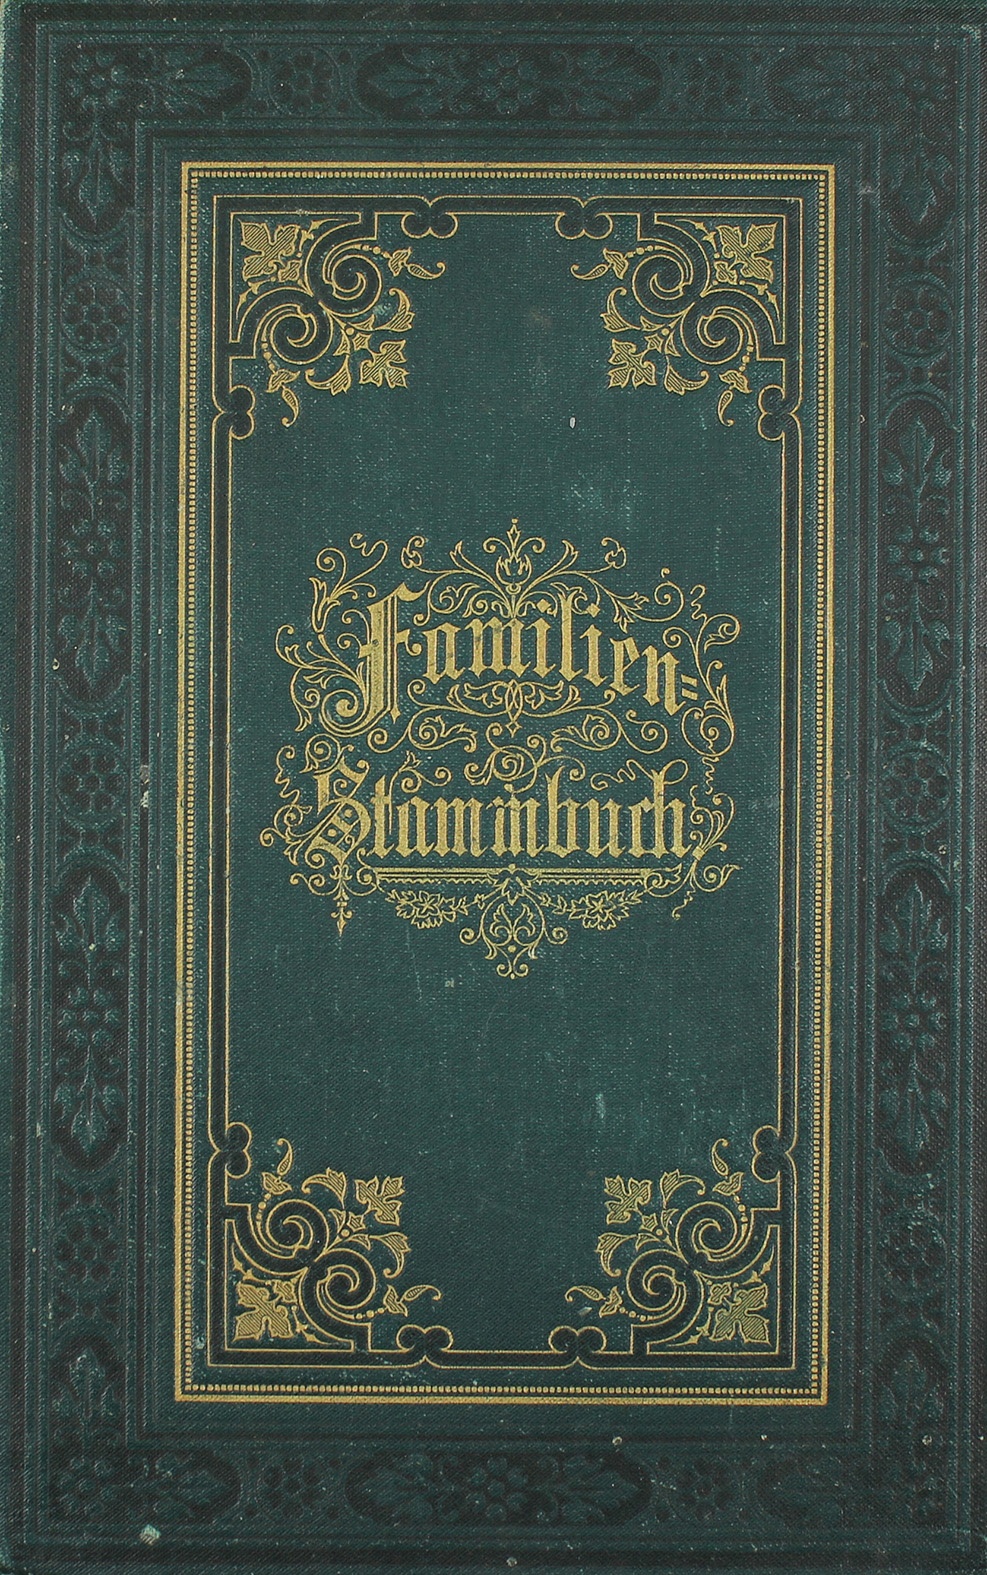 Stammbuch der Familie Cyrus aus Magdeburg, 1902 (Museum Wolmirstedt RR-F)